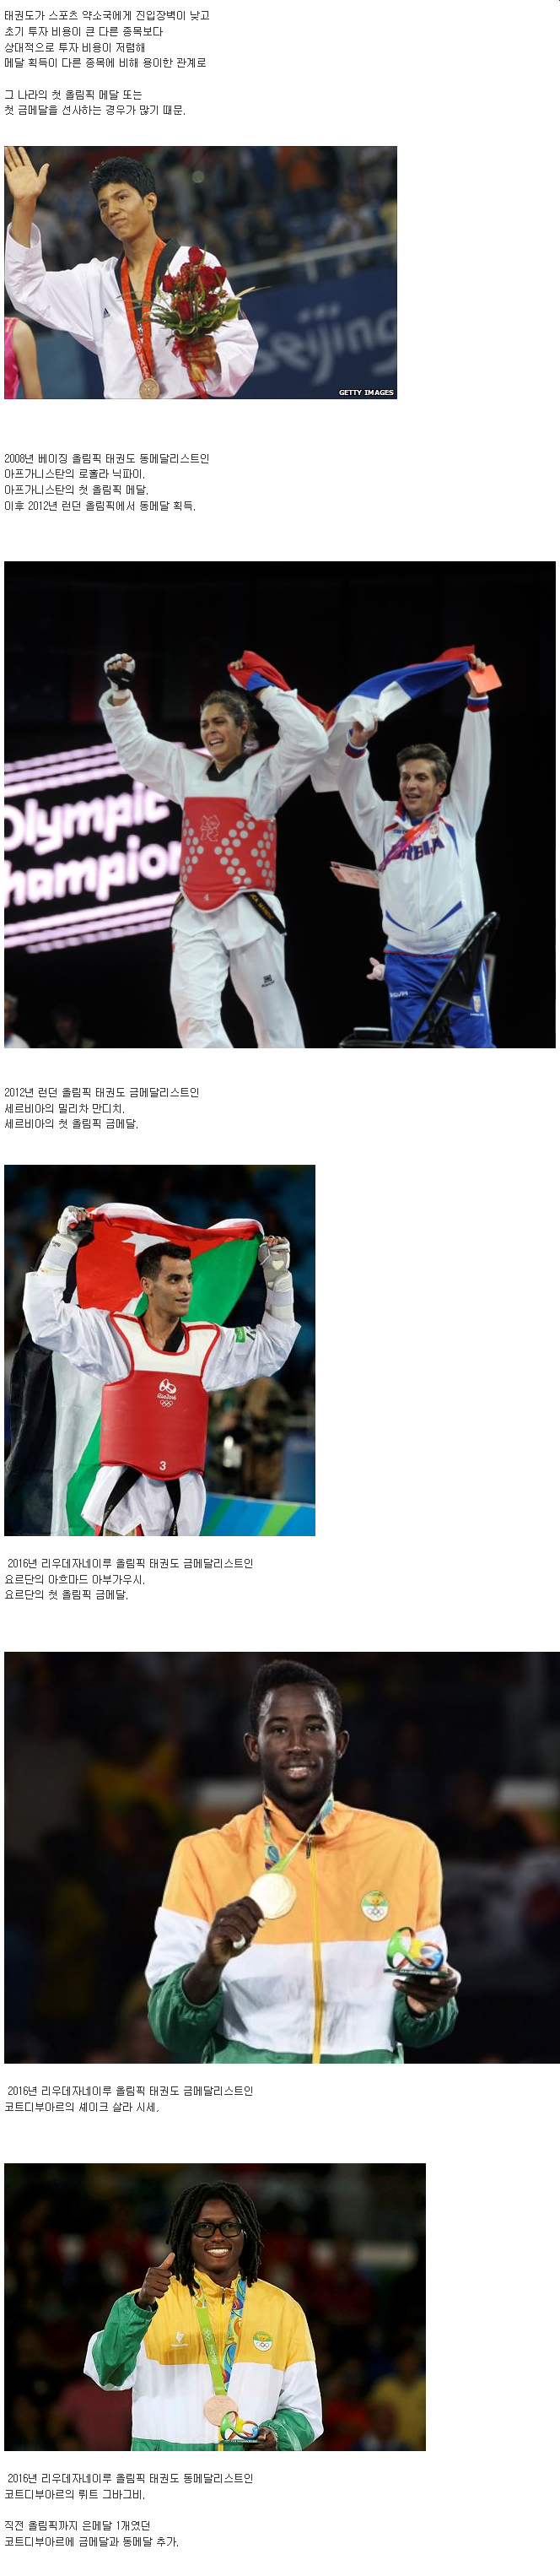 태권도가 올림픽 종목으로 인기가 많은 이유.jpg